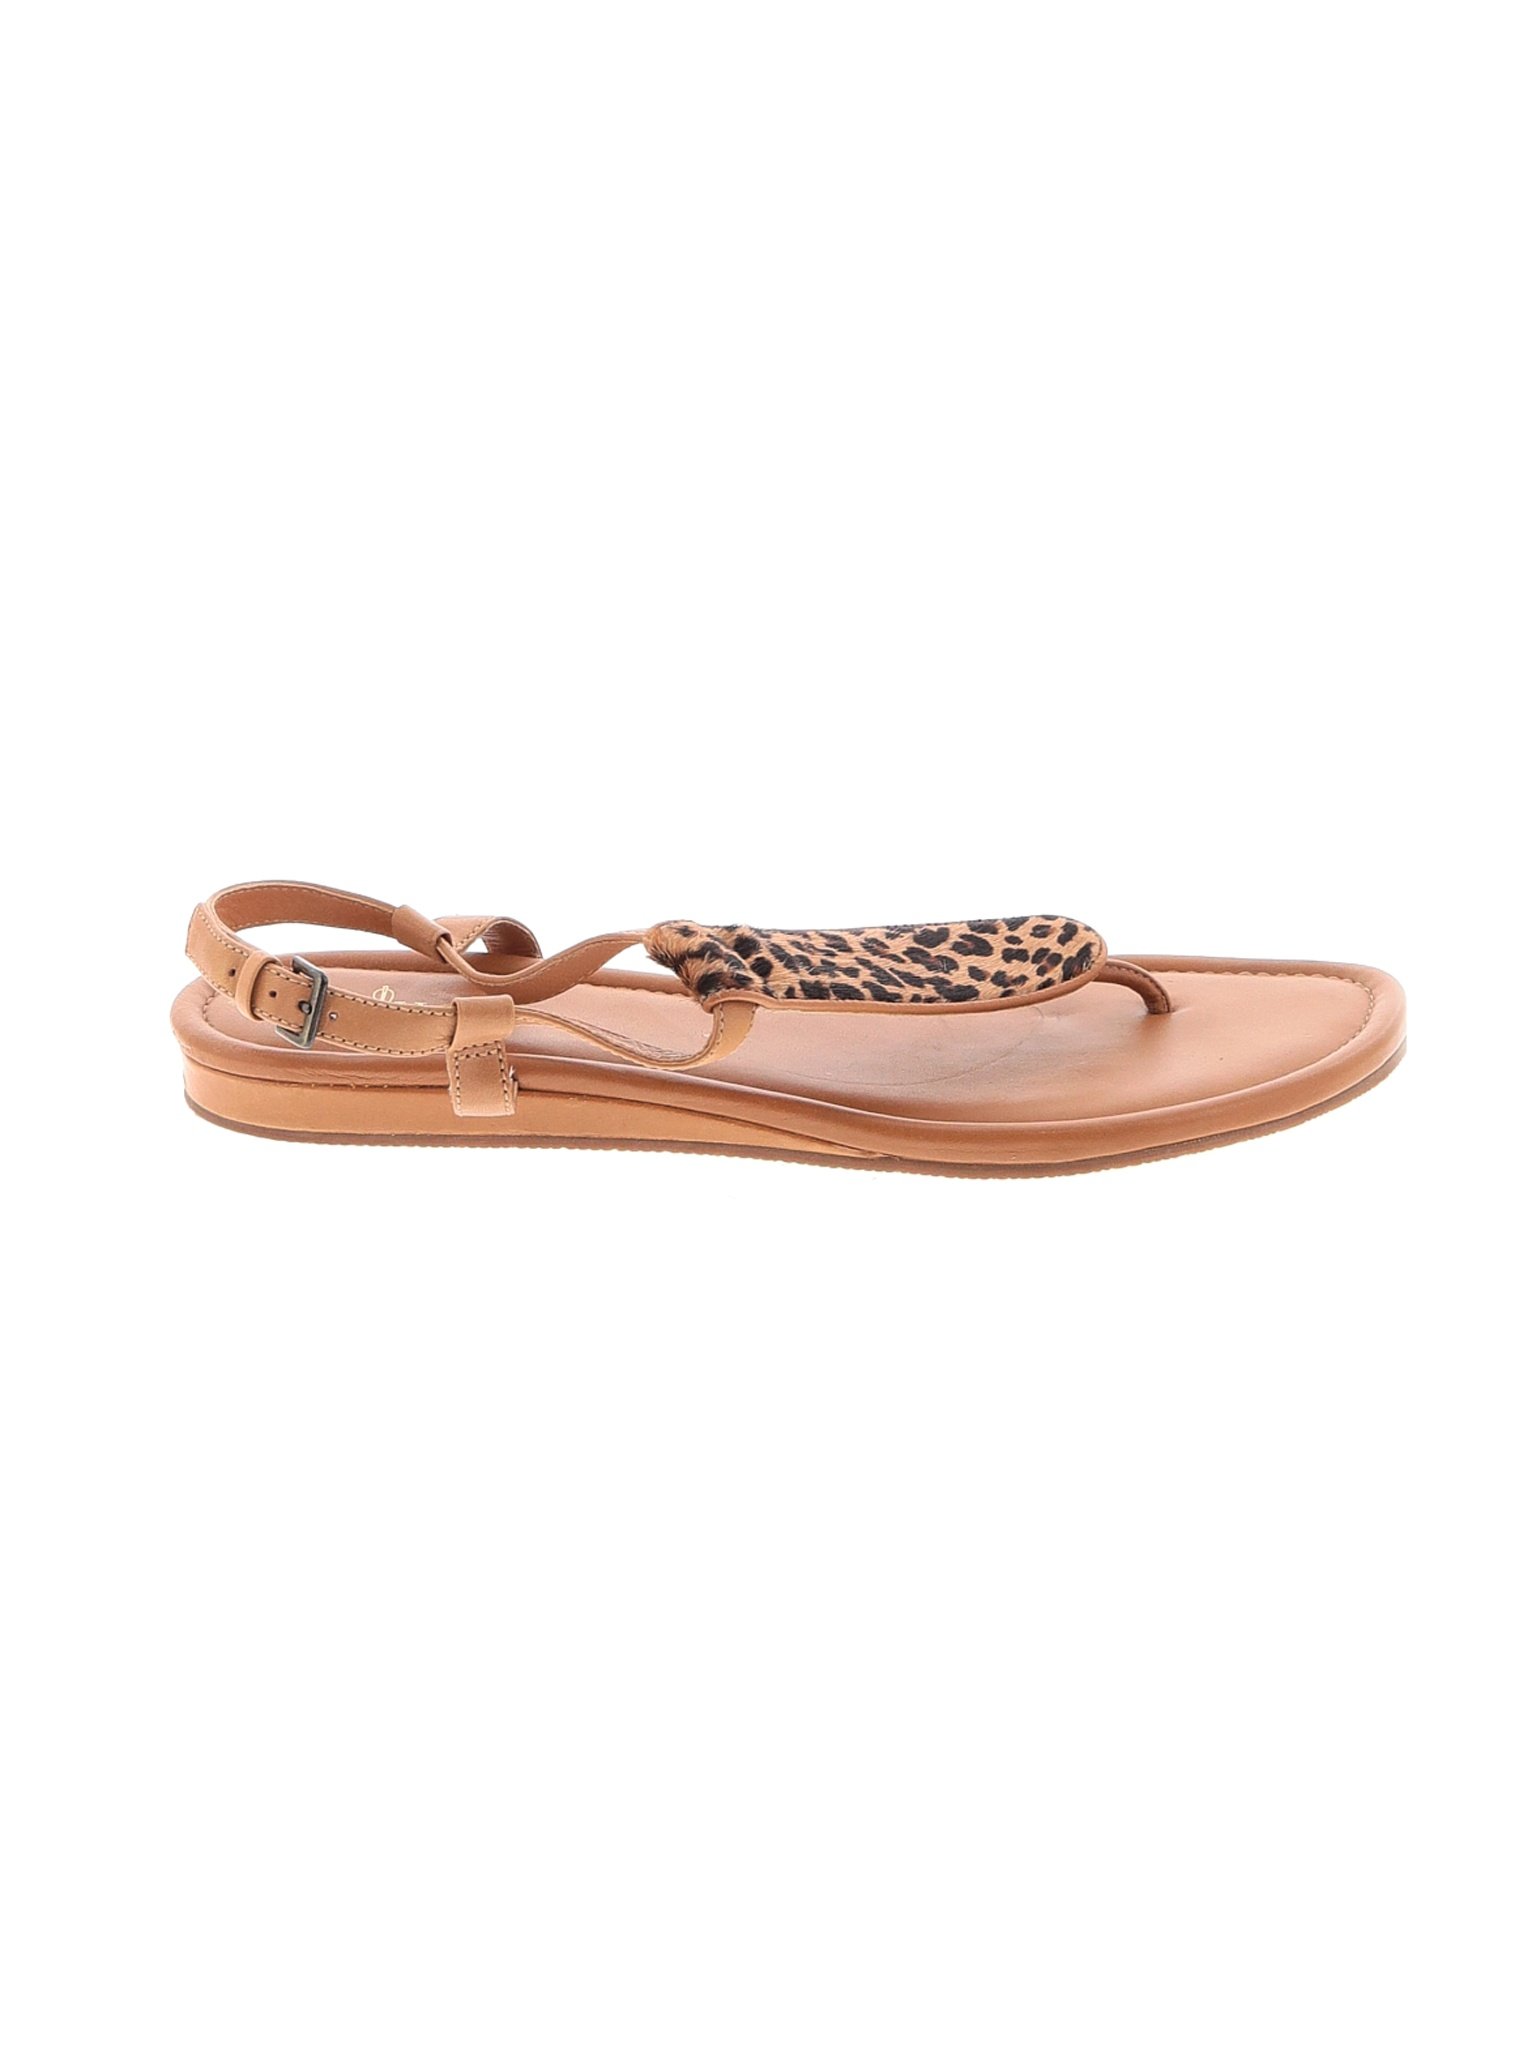 Cole Haan Women Brown Sandals US 10.5 | eBay